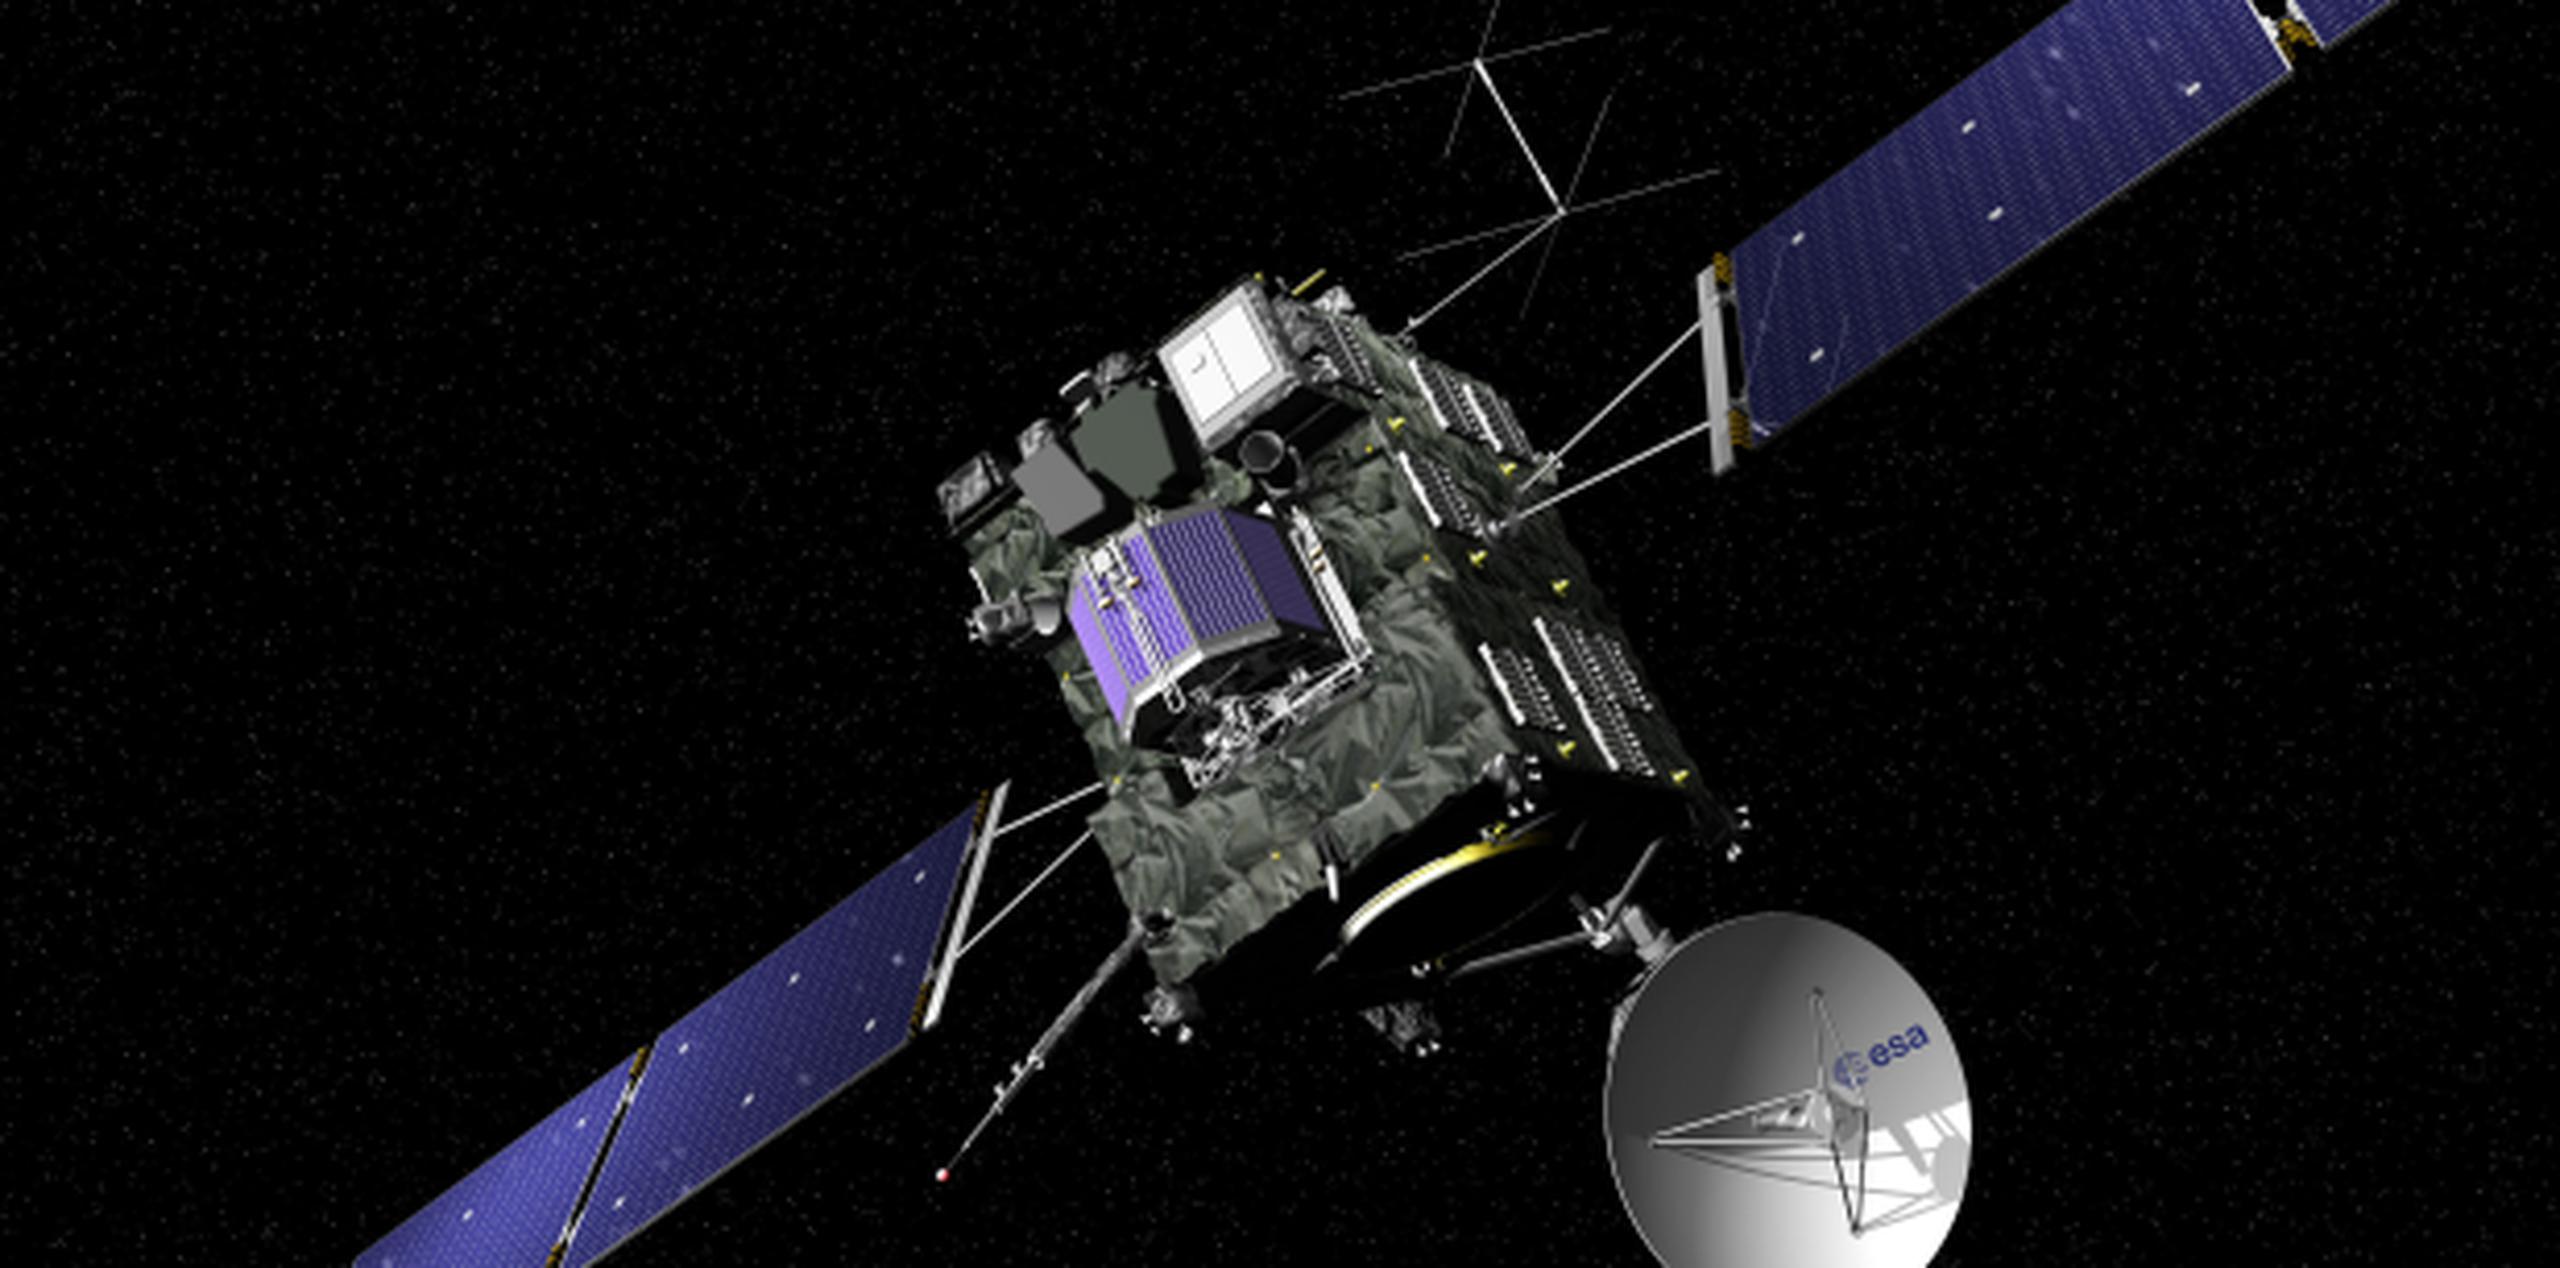 Tras años de servicio, en su misión final la sonda espacial Rosetta intentará posarse en la superficie del cometa 67P/Churyumov-Gerasimenko. (J. Huart/ESA via AP)
